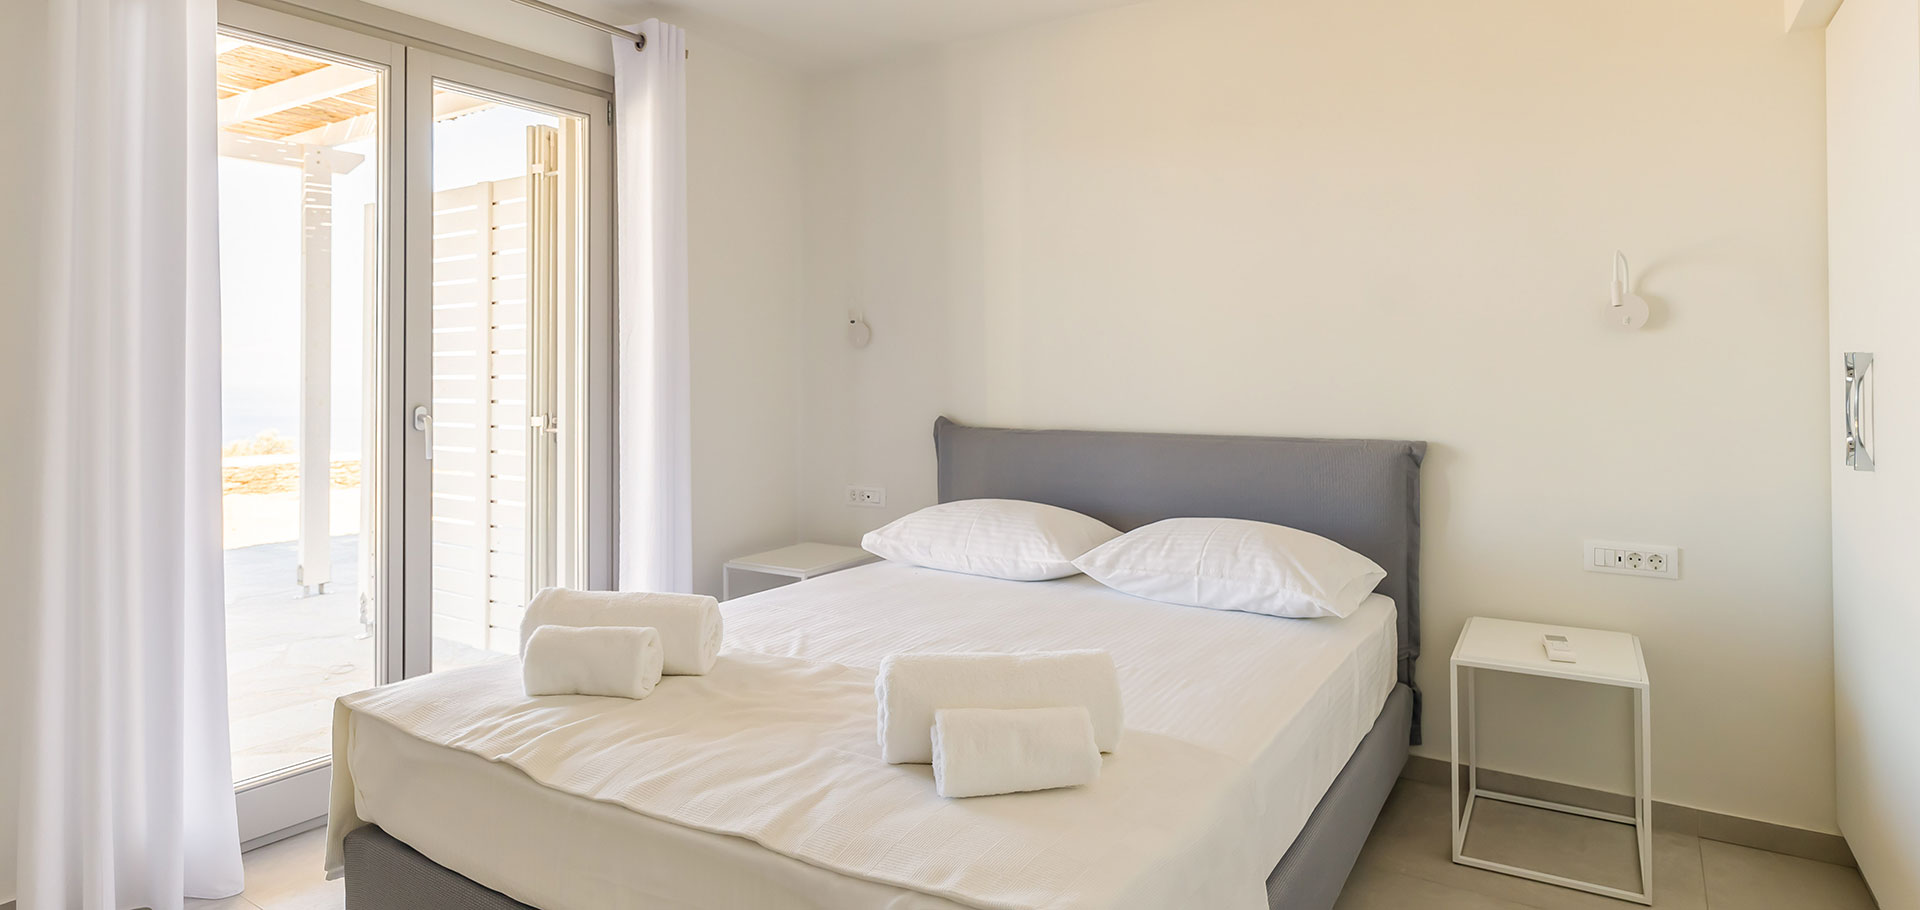 Υπνοδωμάτιο με διπλό κρεβάτι στο Comfort διαμέρισμα